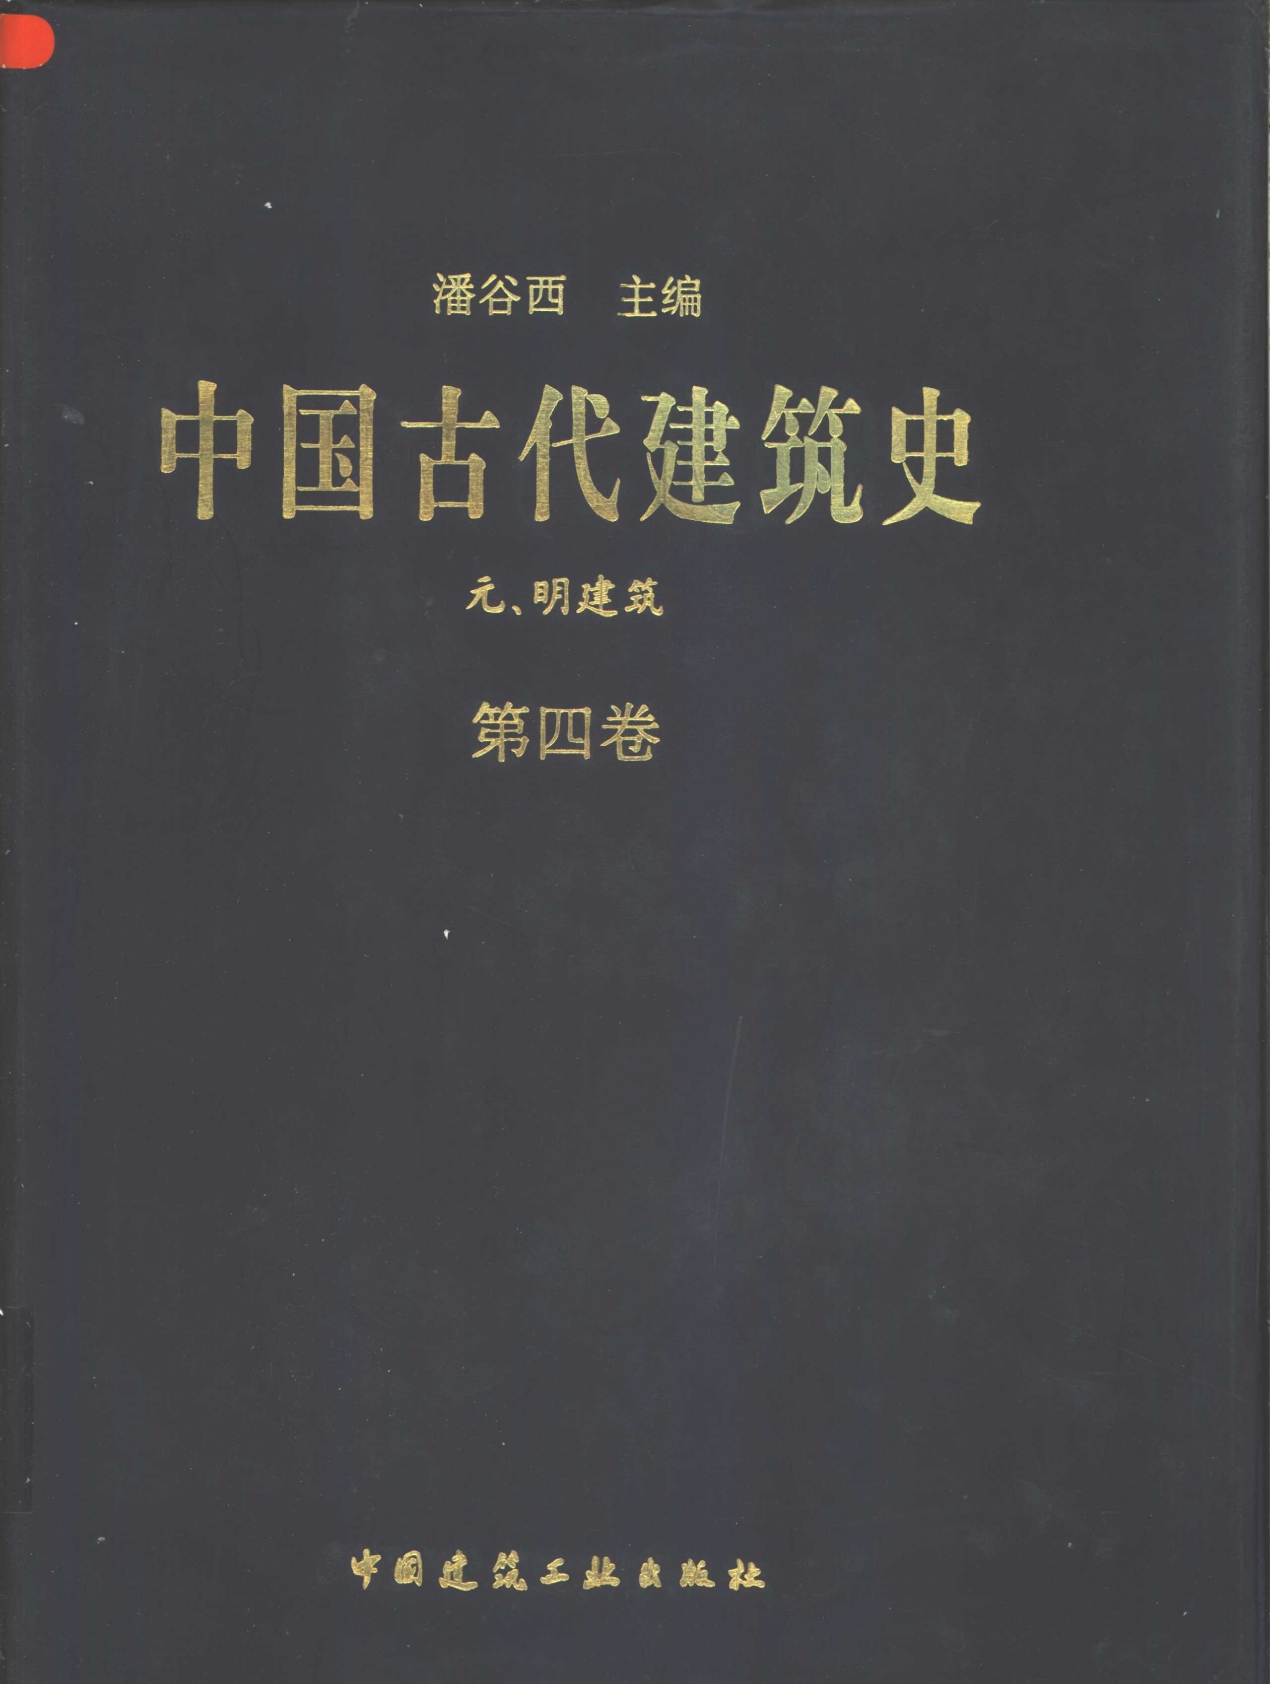 中国古代建筑史第四卷, 元明建筑